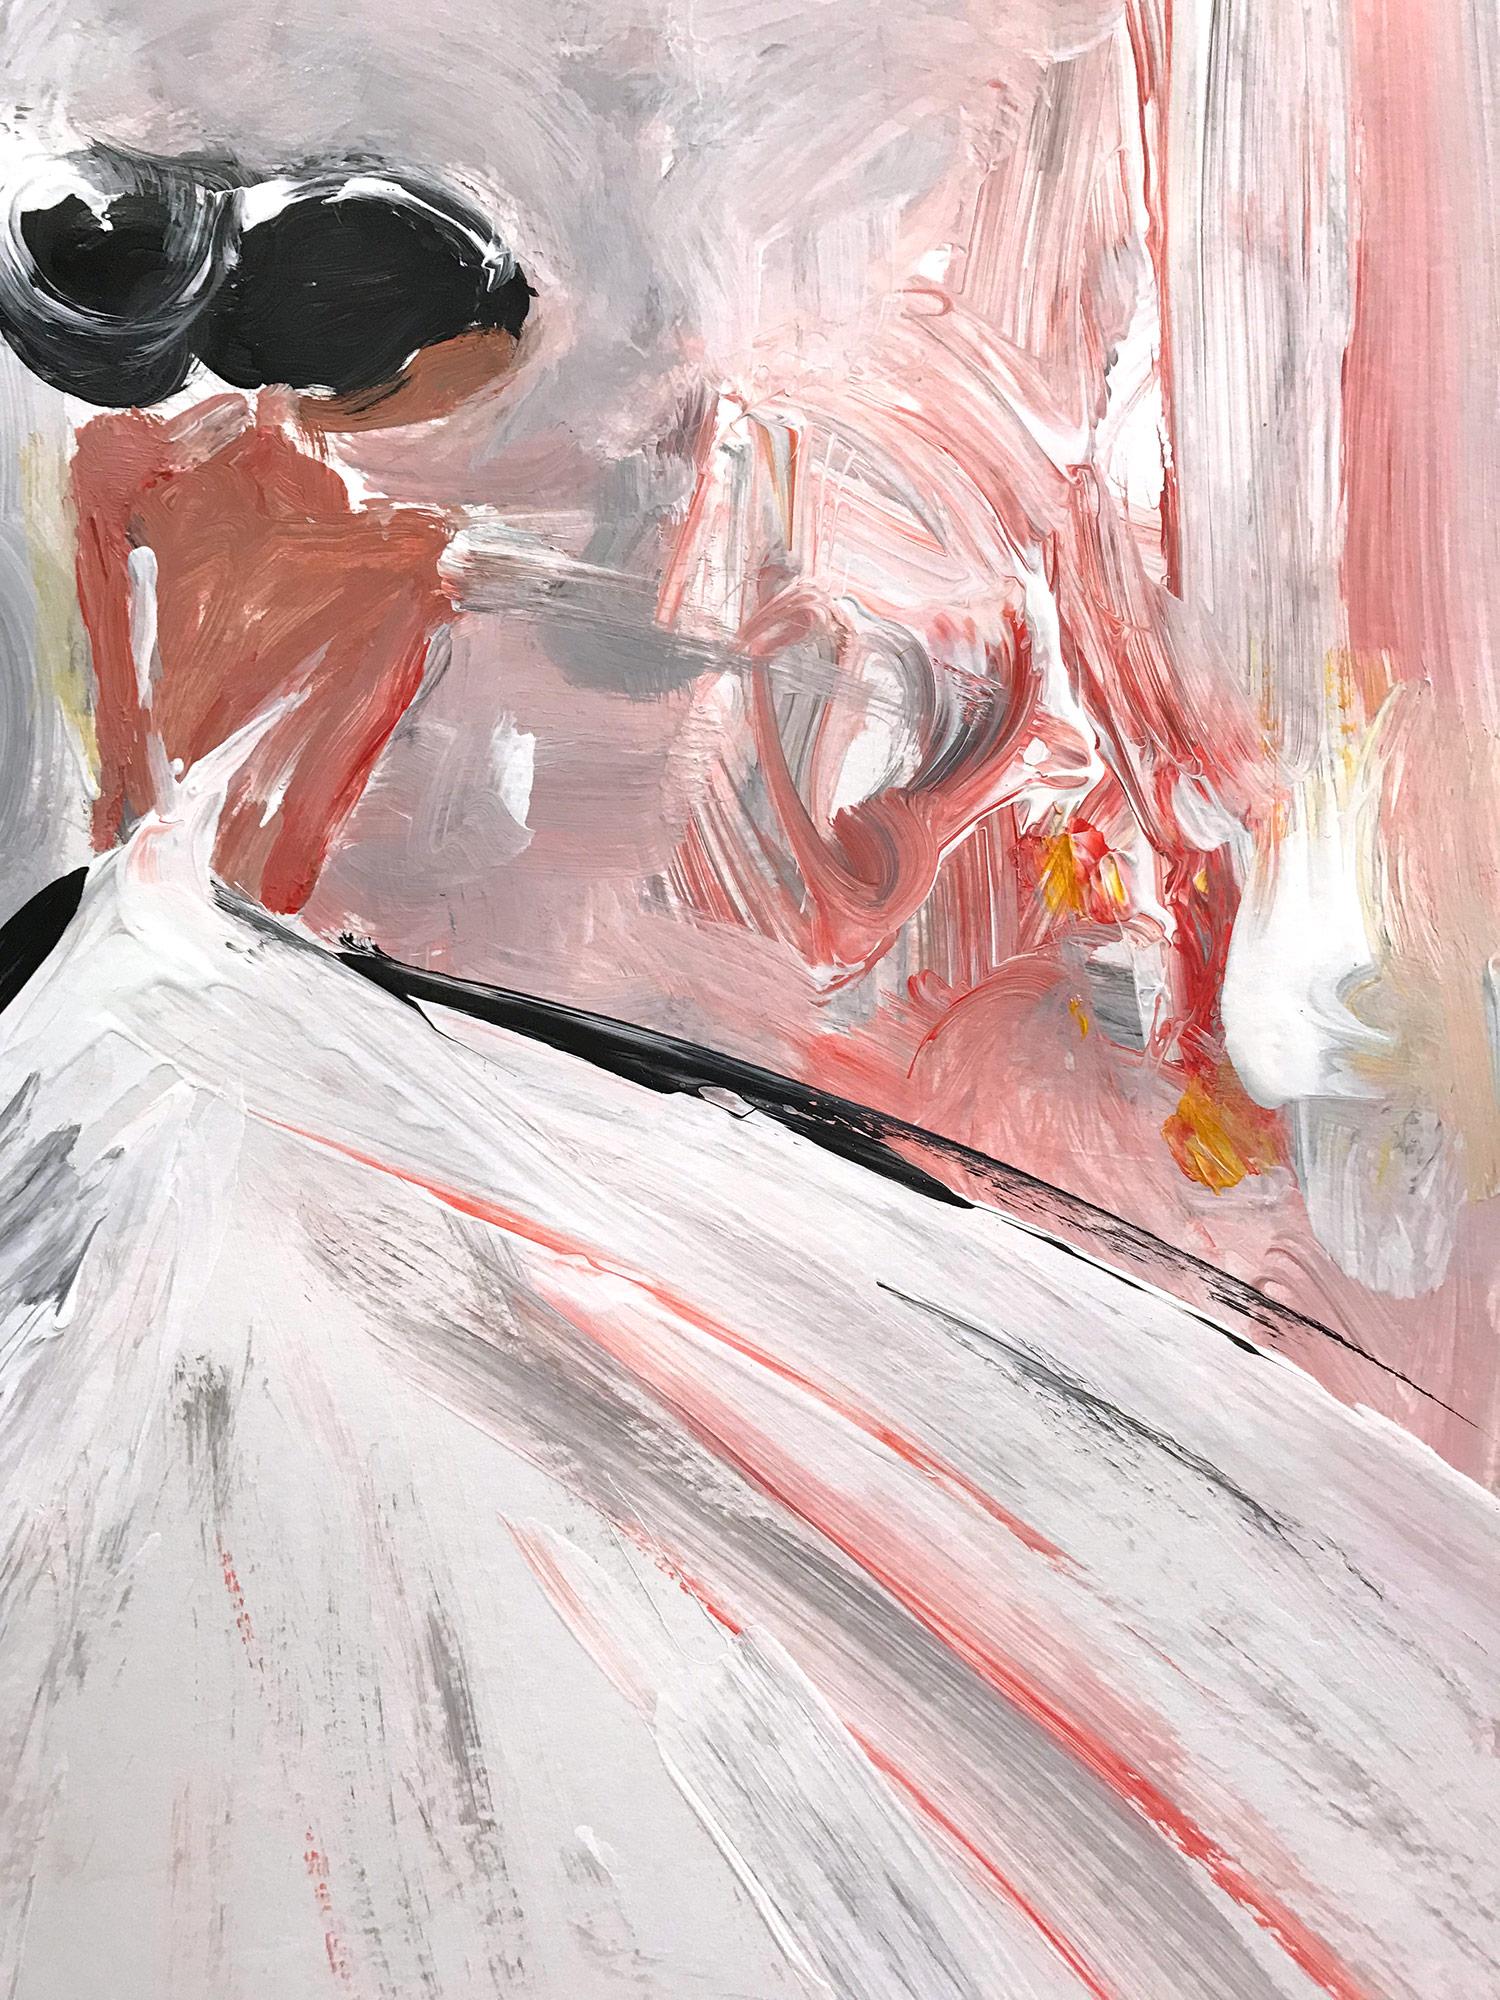 Eine sehr skurrile und mutige Darstellung einer Frau, die anmutig in einem weißen Kleid vor einem rosa Hintergrund steht. Dieses Stück fängt die Essenz der Mode in Paaren ein. Es ist in einem sehr modernen und impressionistischen Stil gehalten, mit